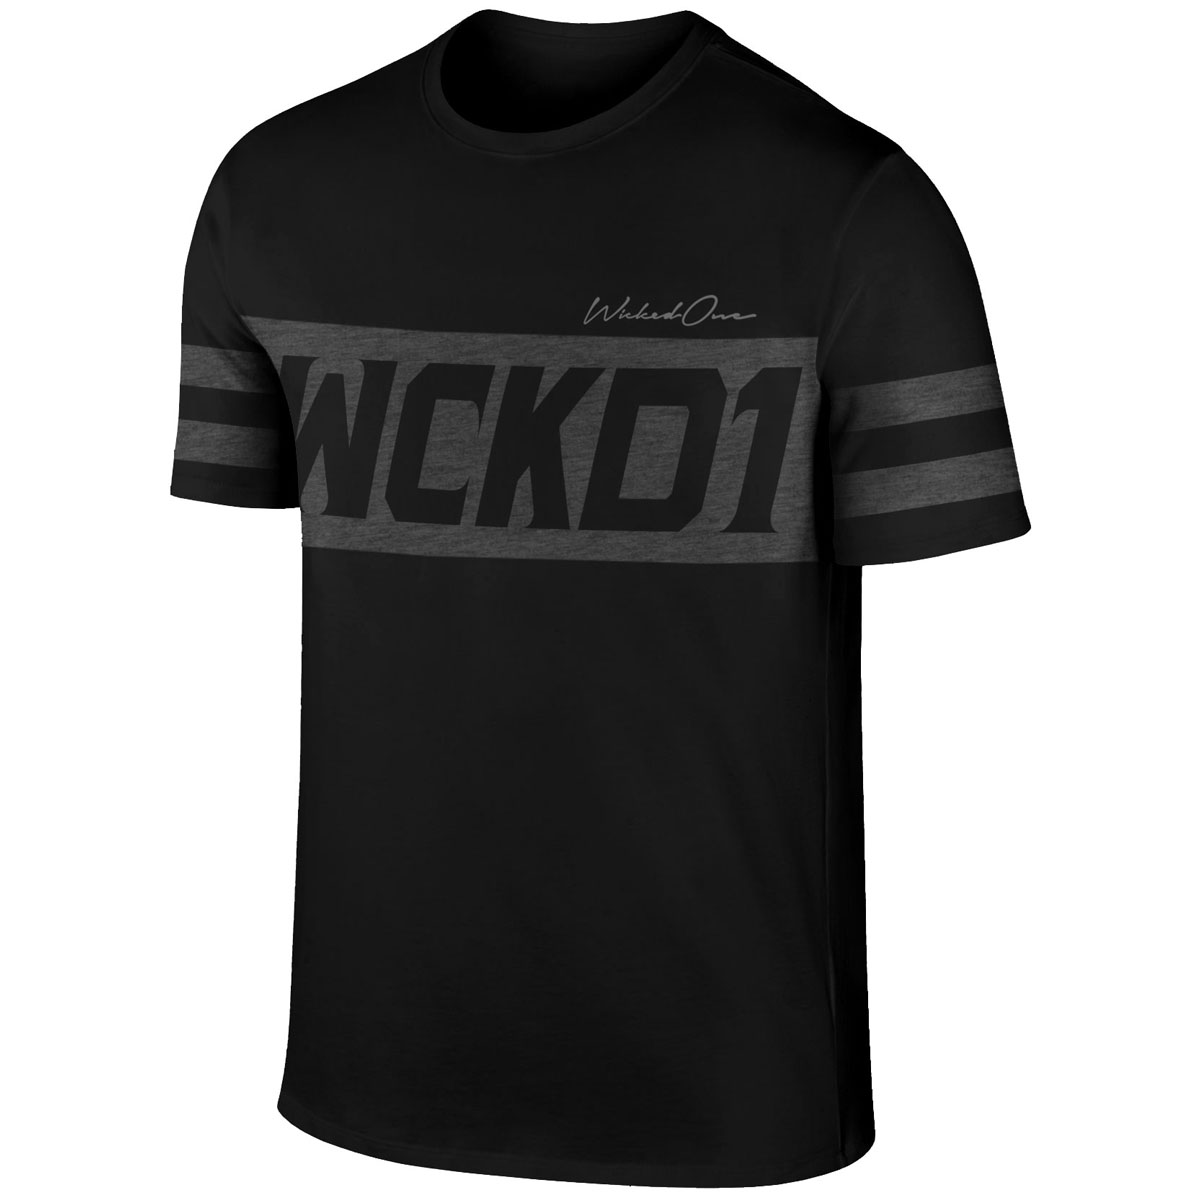 Wicked One T-Shirt, Tracker, schwarz